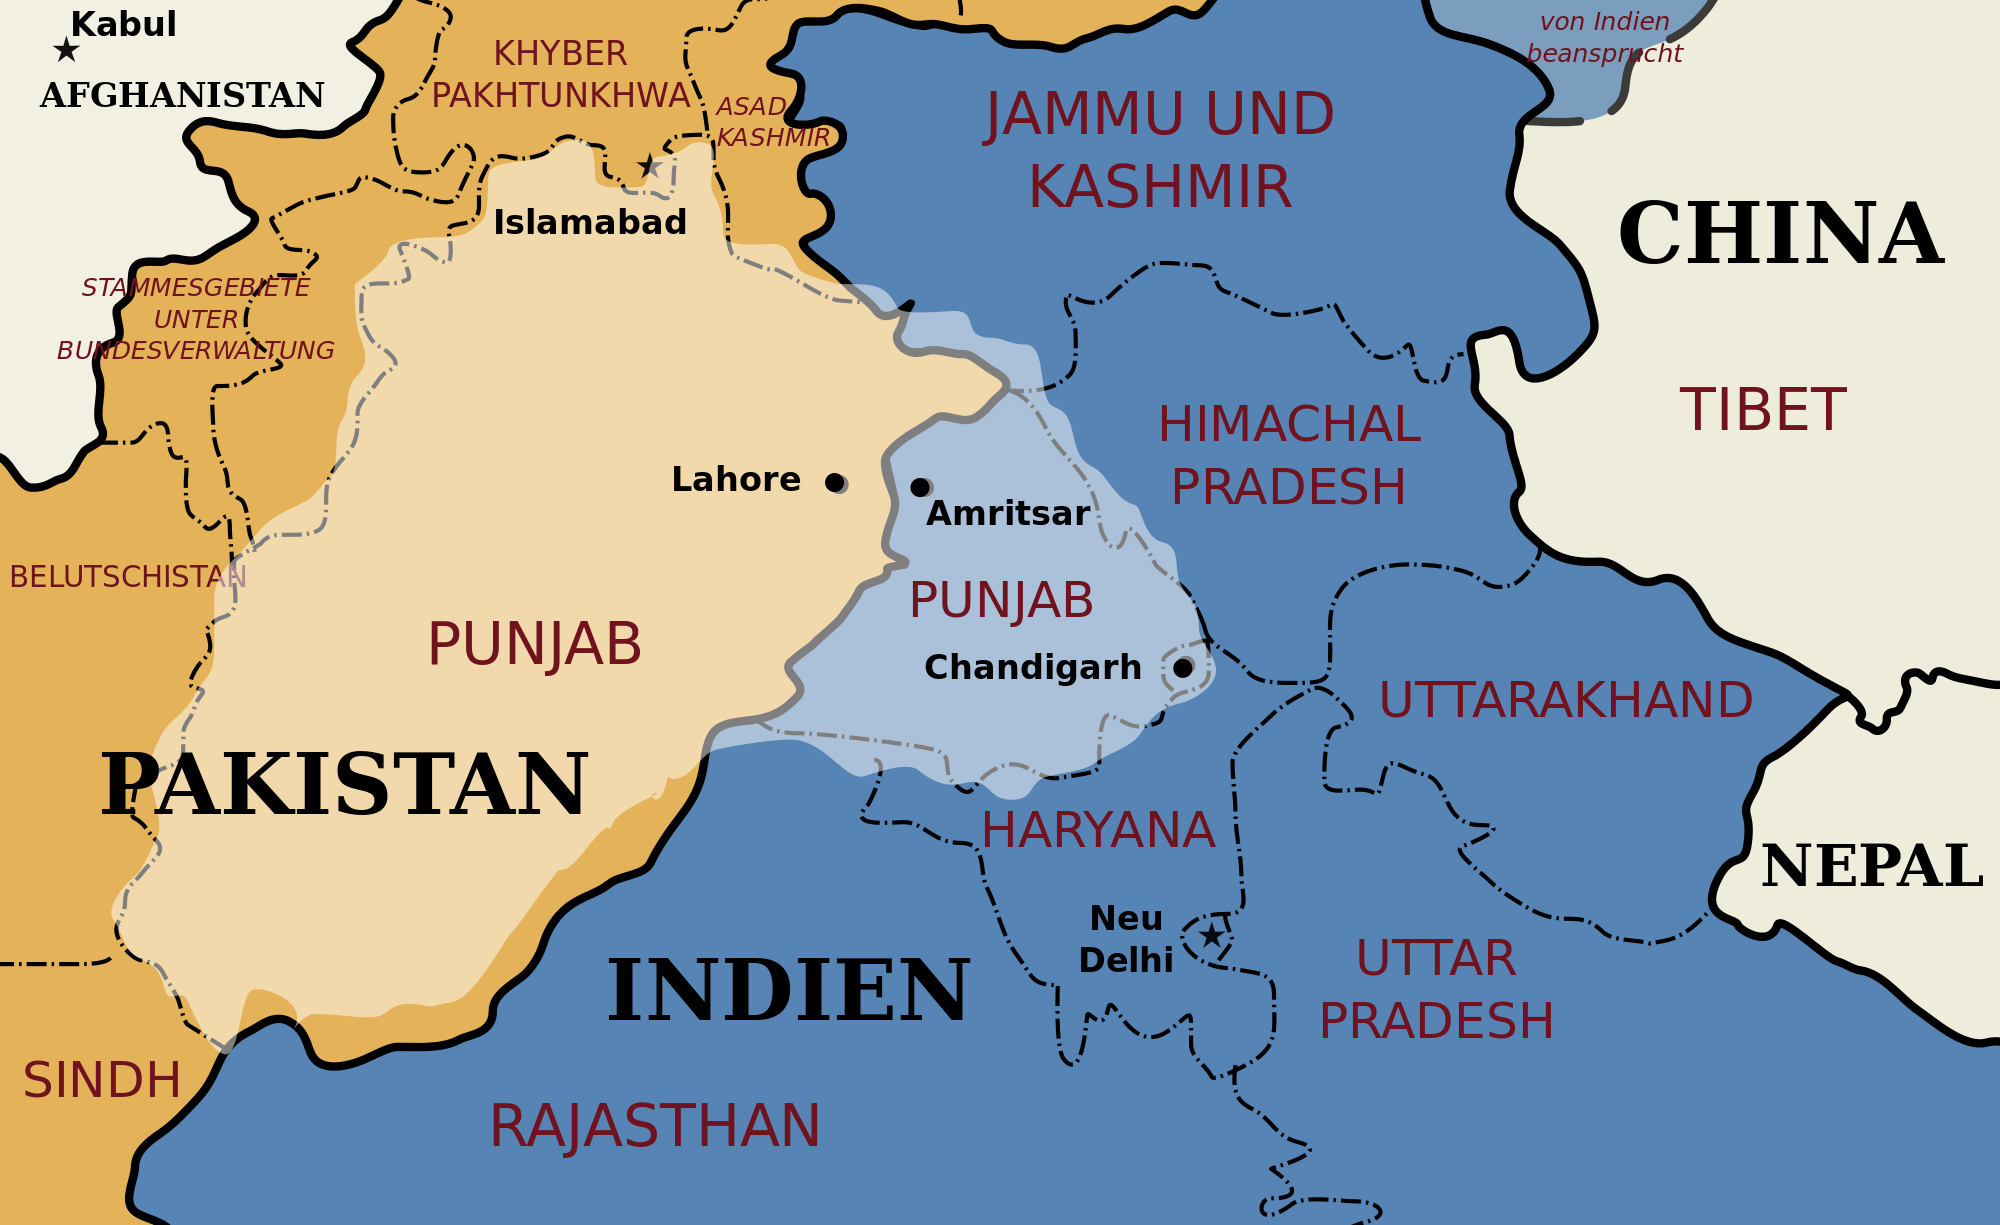 【地图说】被国境线分割的印度五川省